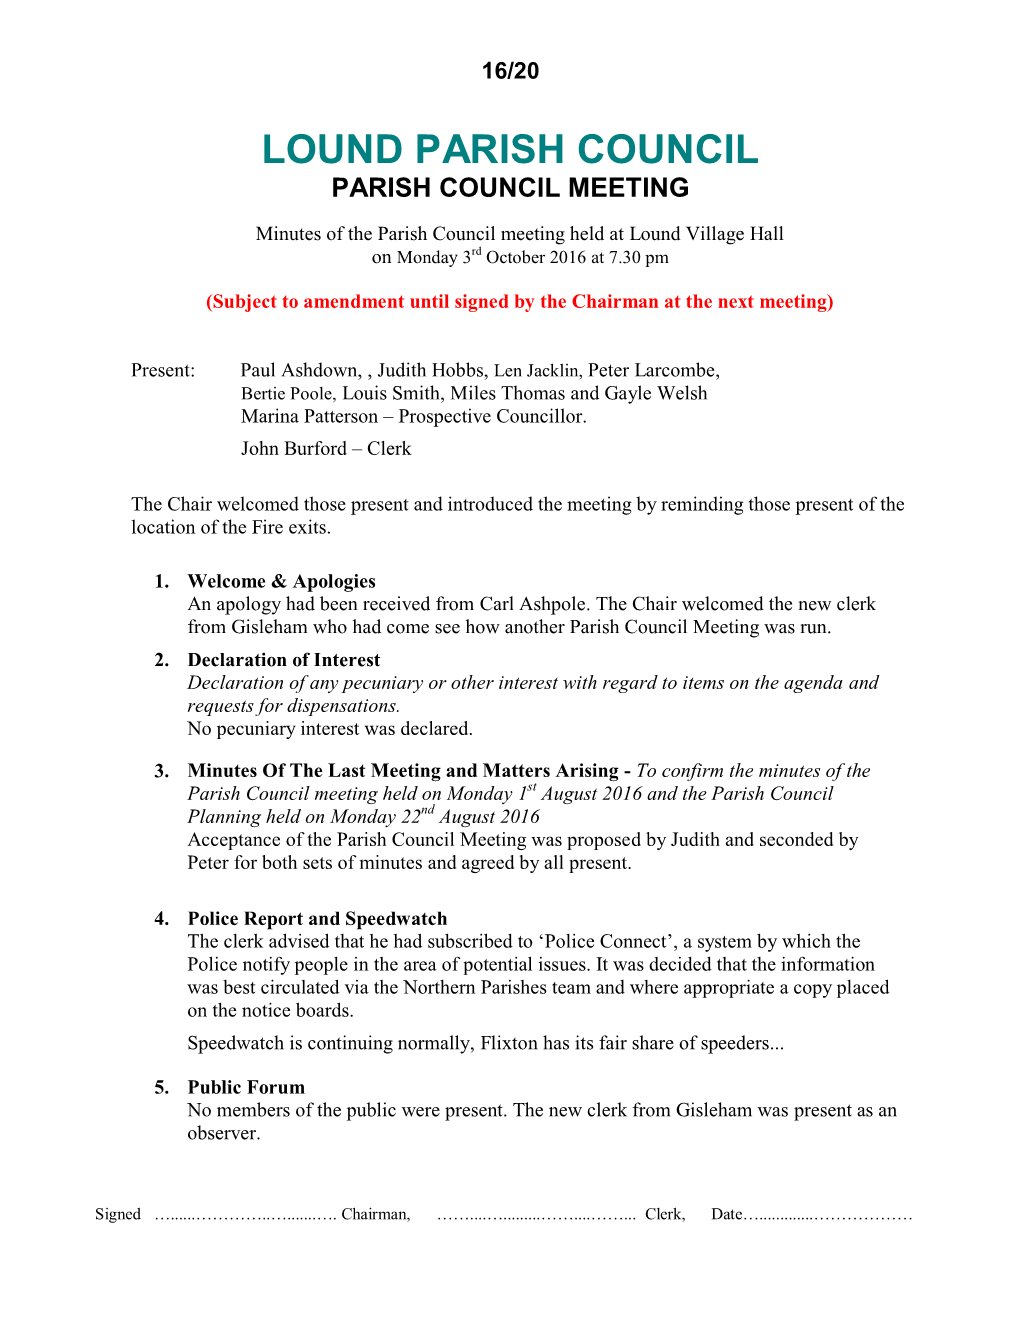 Lound Parish Council Parish Council Meeting